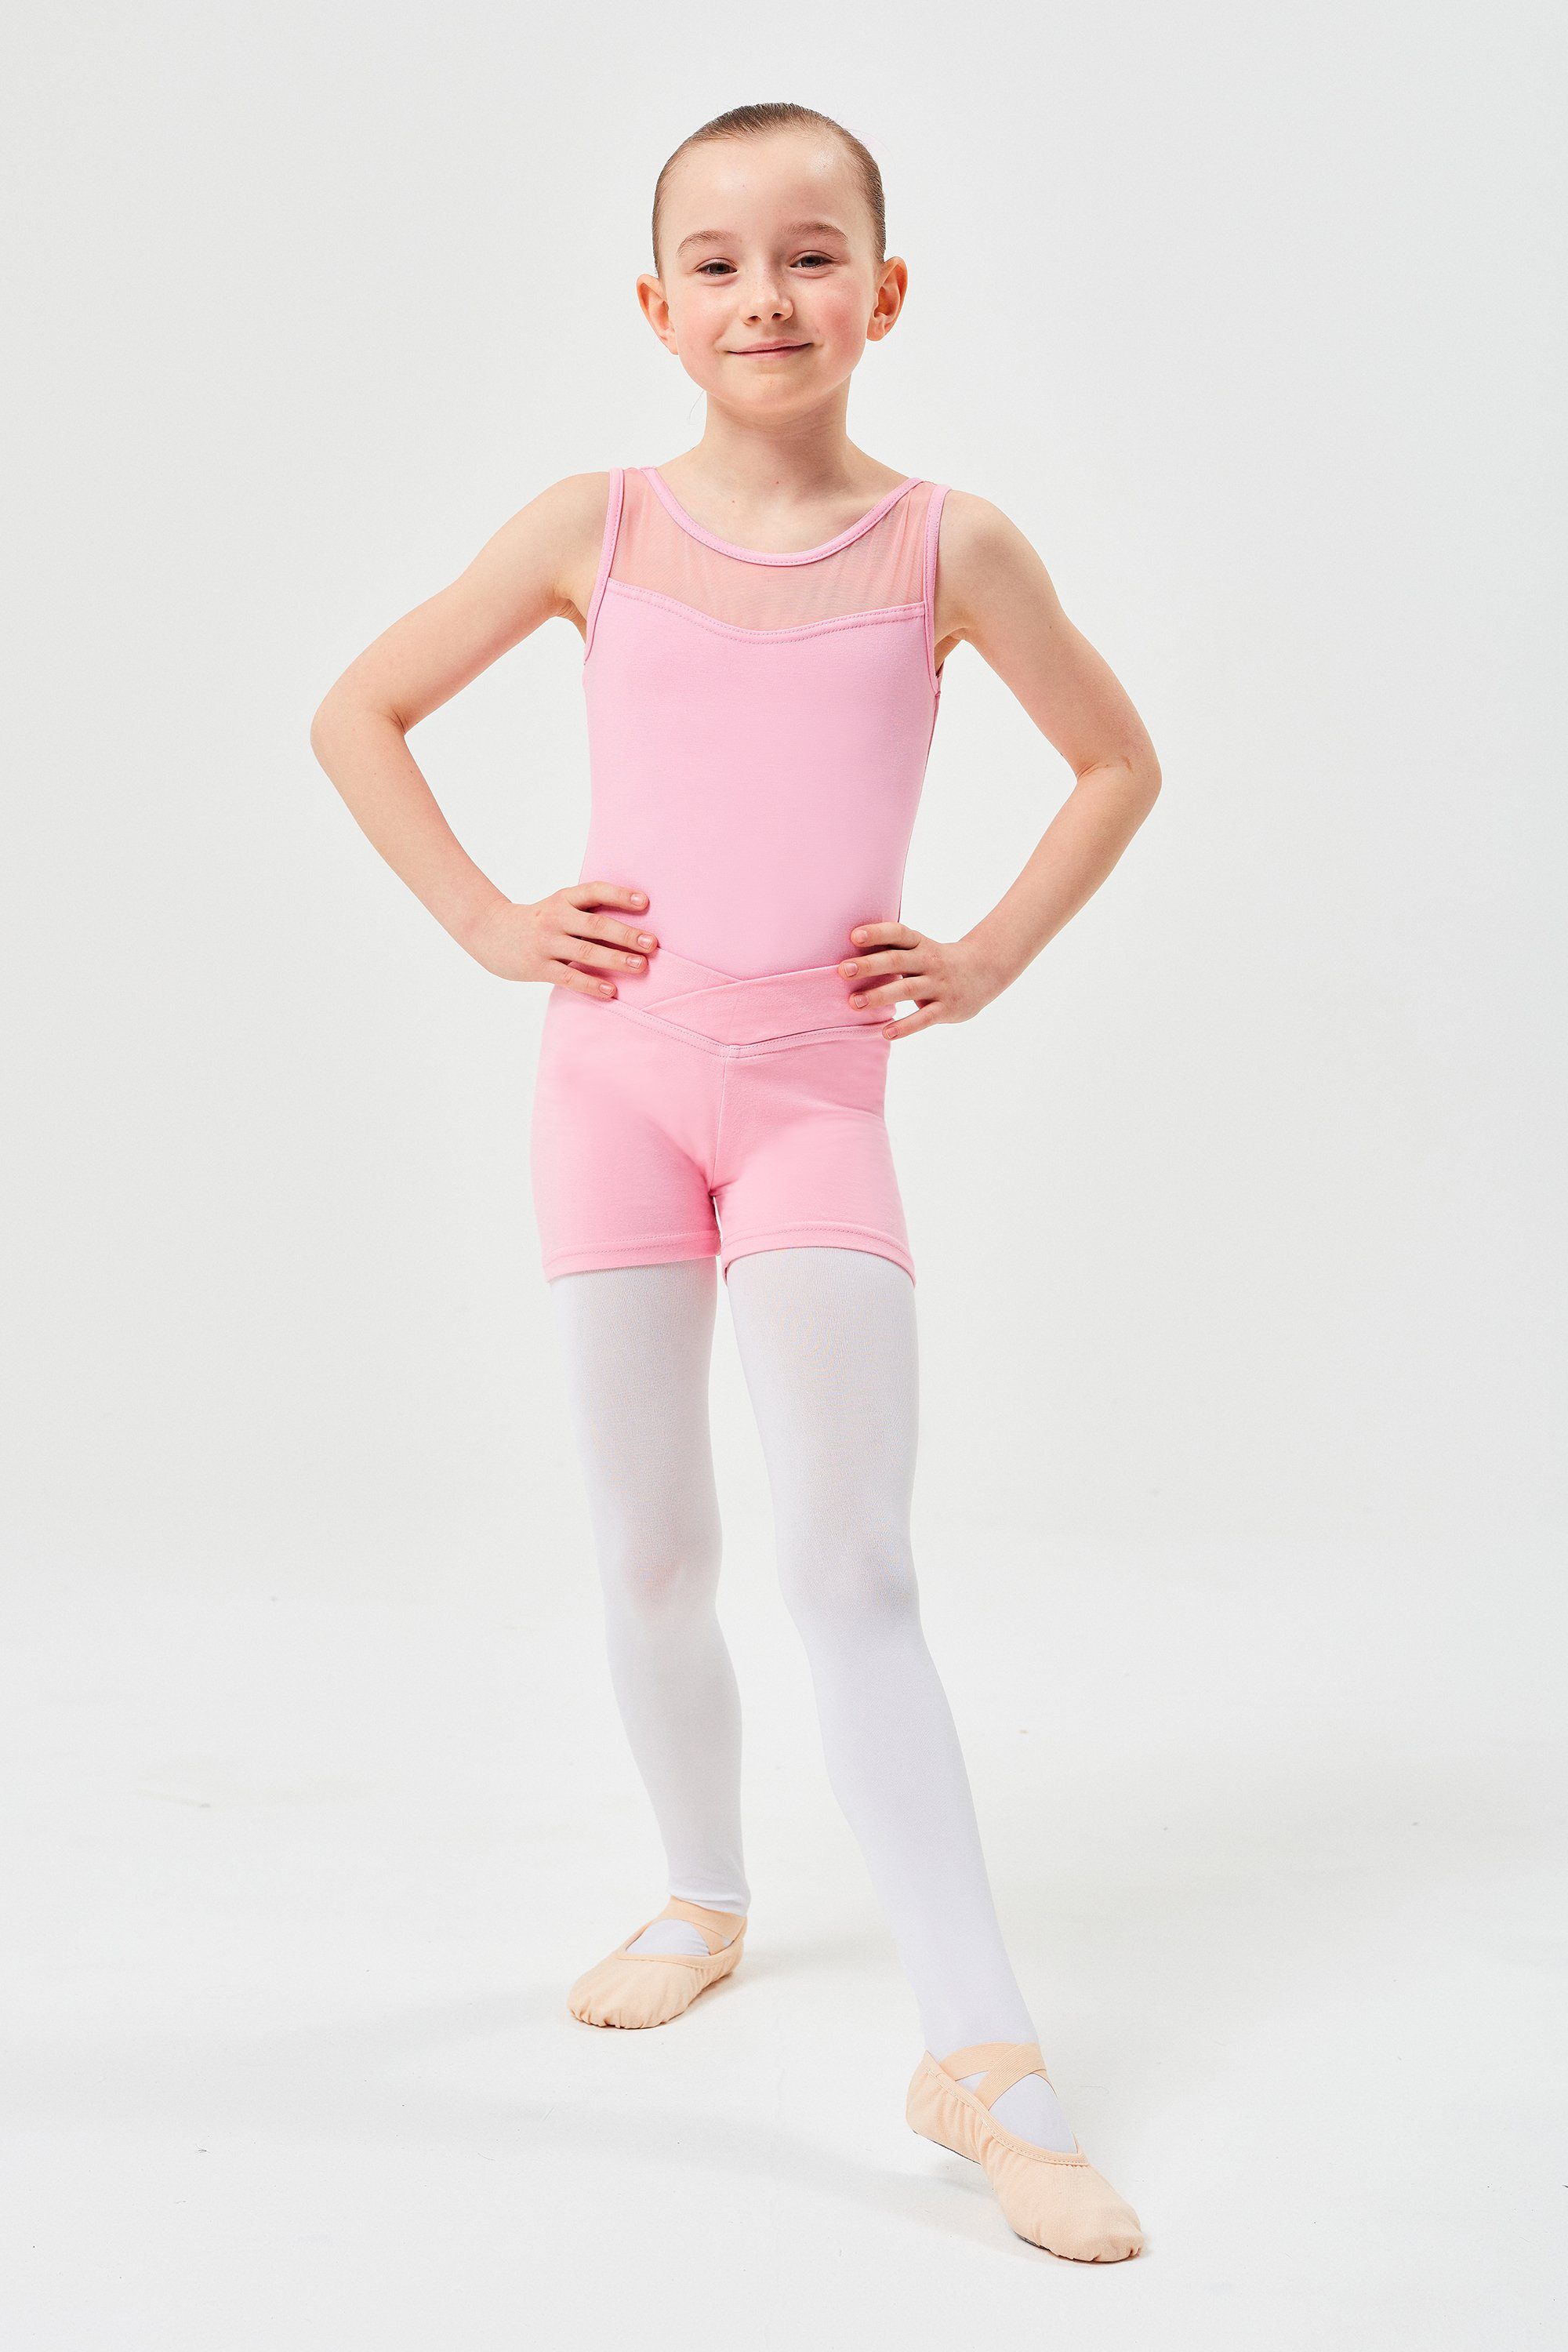 Abby tanzmuster Ballett rosa aus Mädchen weicher kurze Baumwolle Shorts für Dancehose Hose